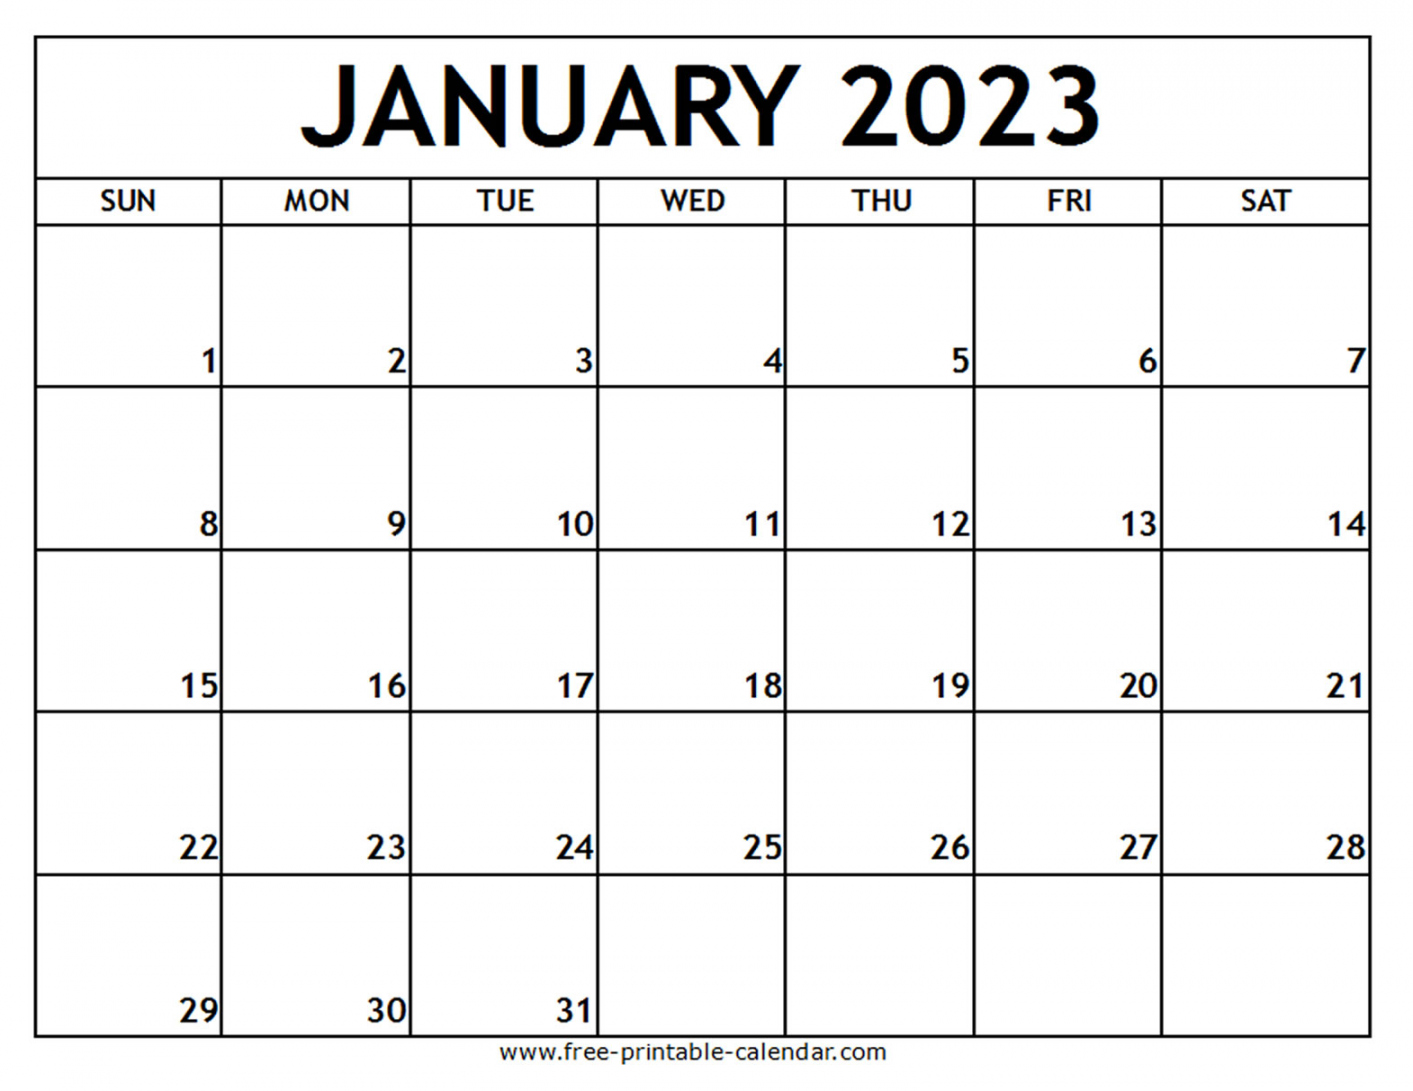 Free Printable Calendar January 2023 - Printable - January  Printable Calendar - Free-printable-calendar